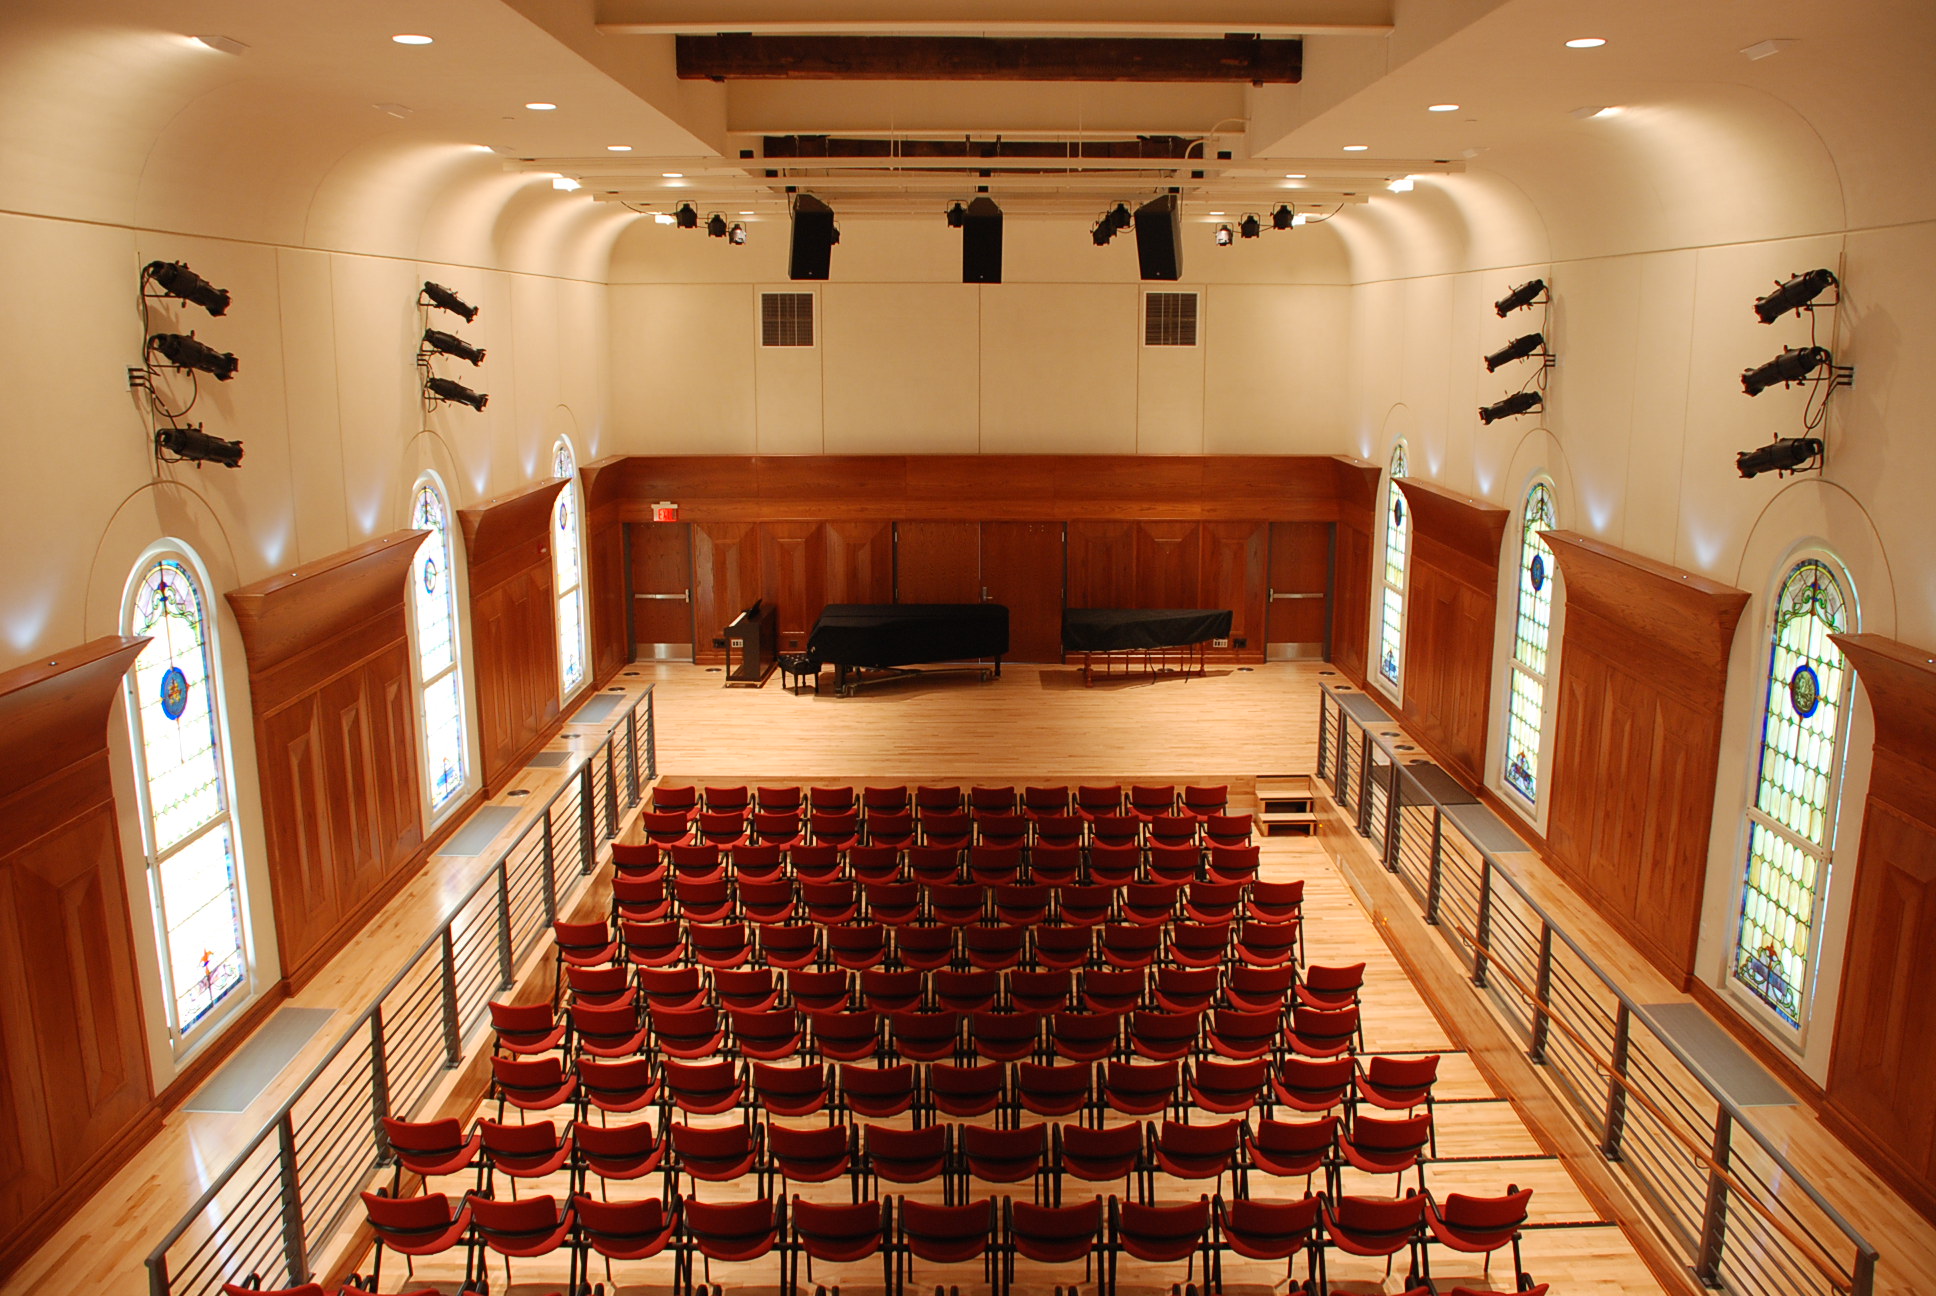 large auditorium with speakers